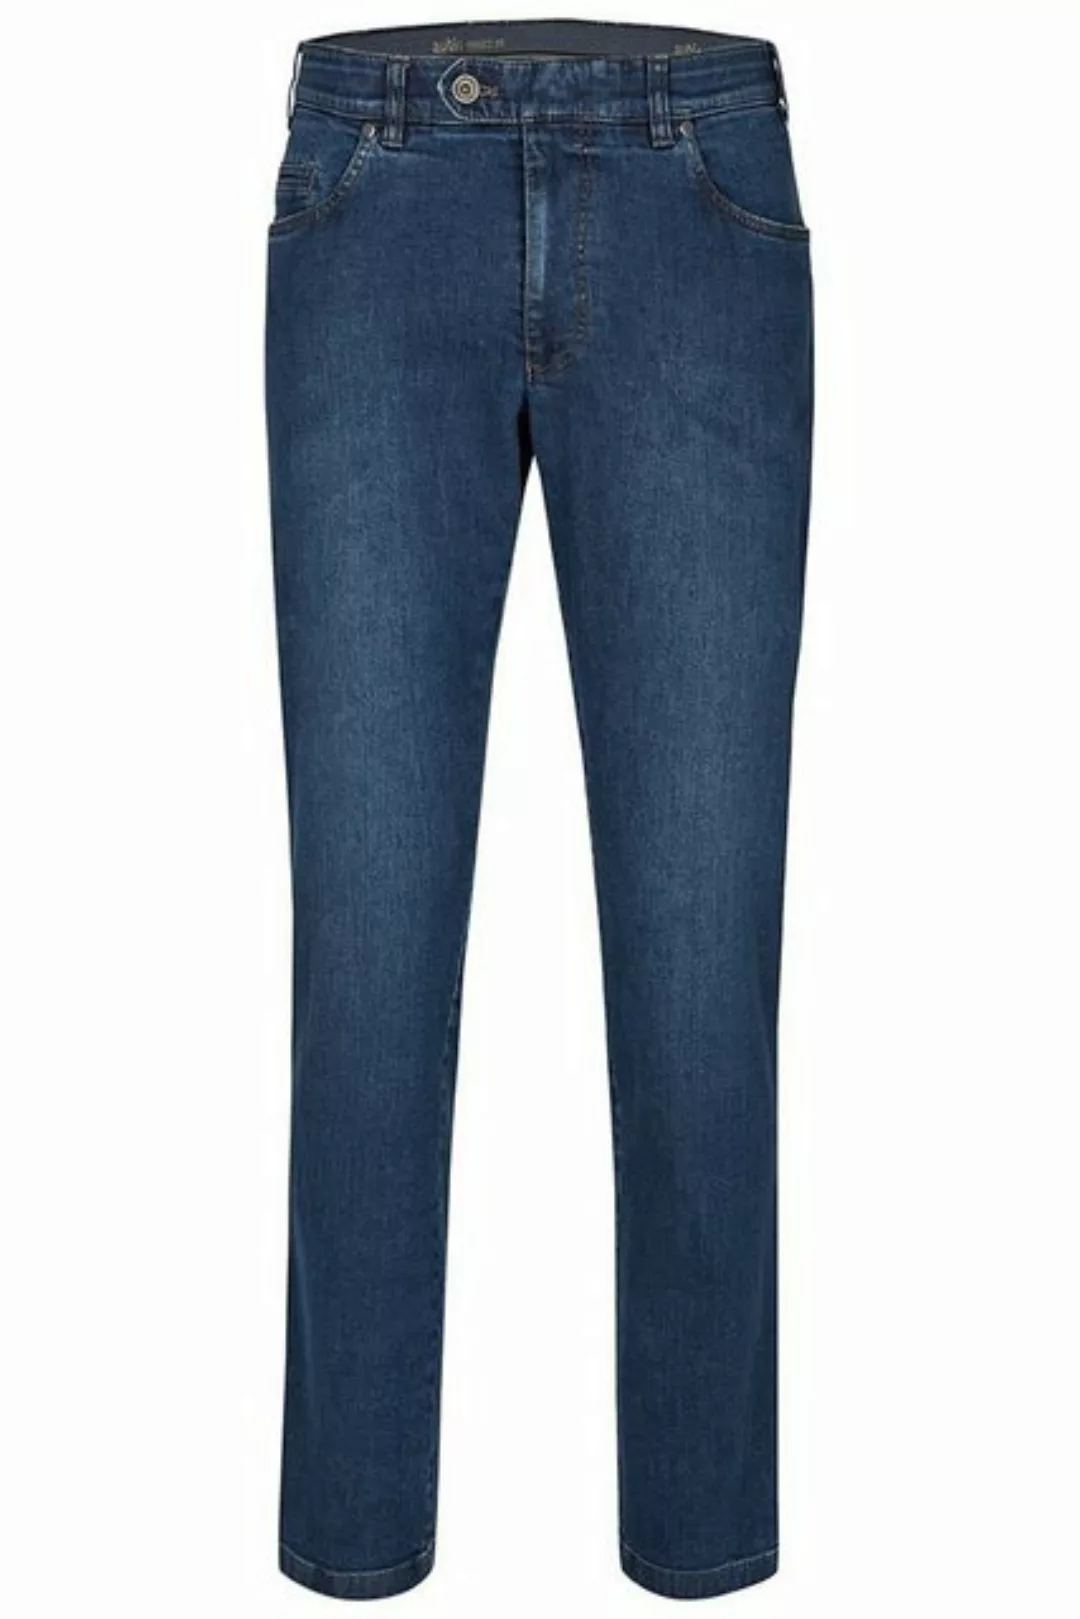 aubi: Bequeme Jeans aubi Perfect Fit Herren Jeans Hose Stretch aus Baumwoll günstig online kaufen